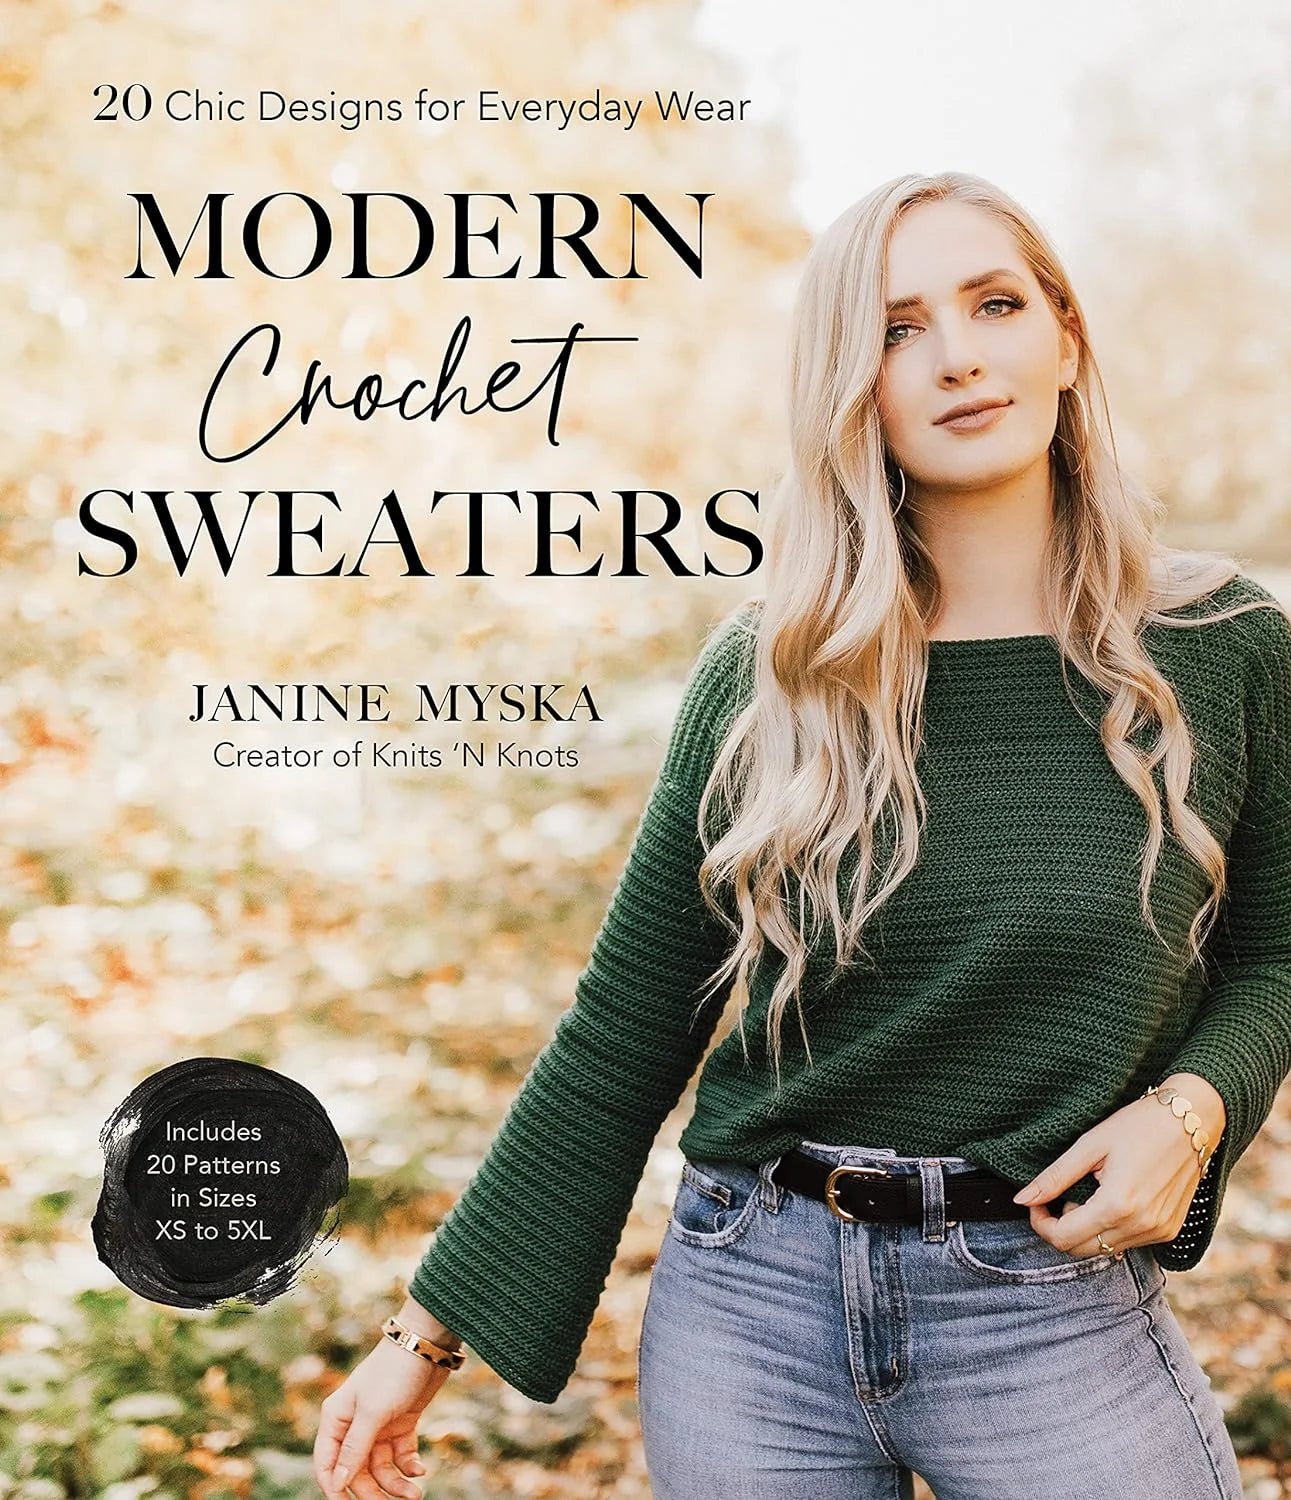 Modern Crochet Sweaters: 20 Chic Designs for Everyday Wear - Janine Myska - The Little Yarn Store